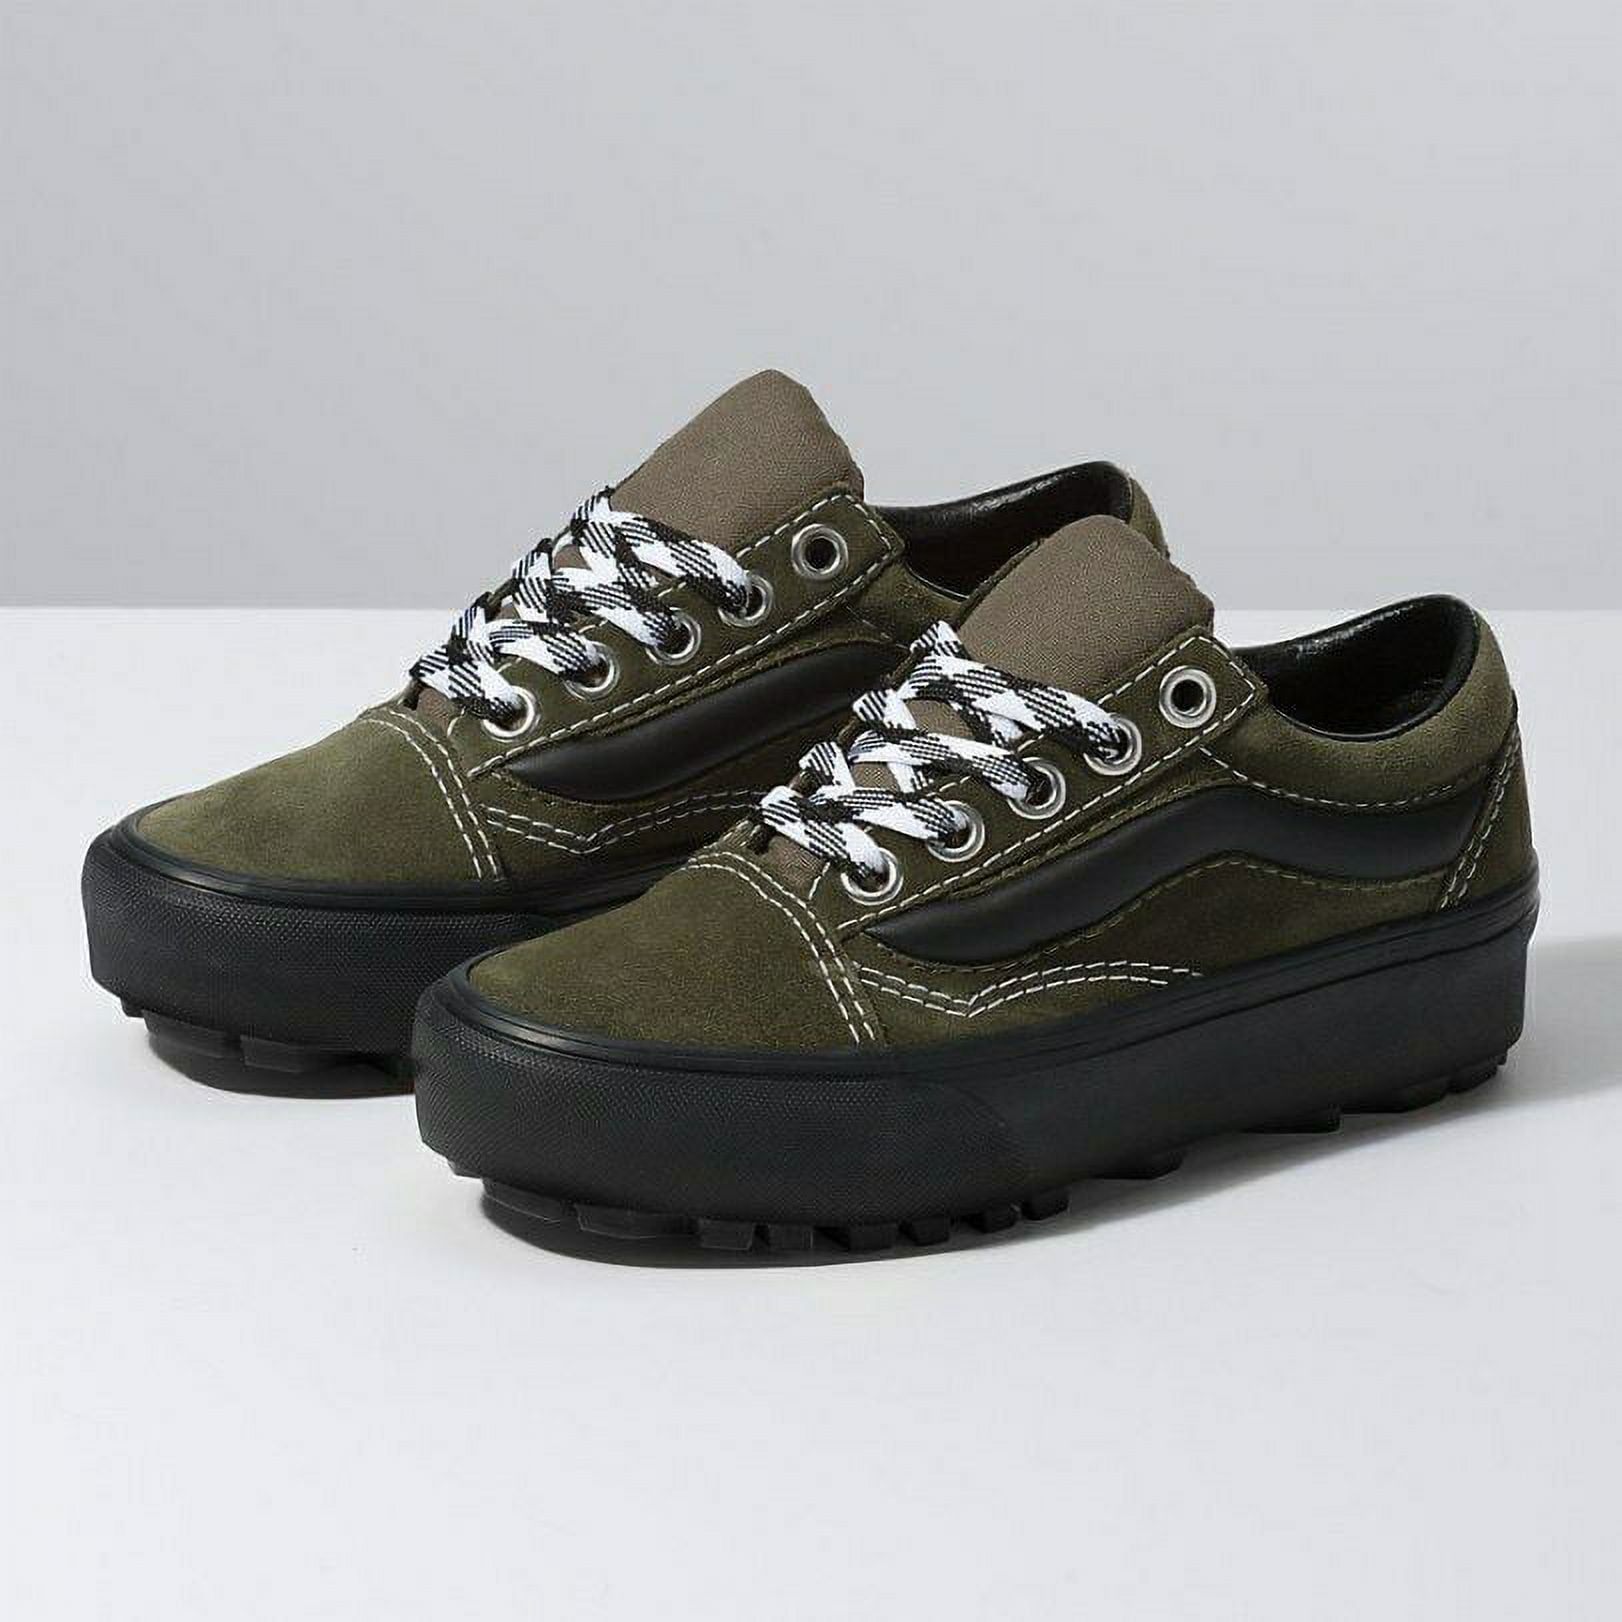 Vans Old Skool Lug Platform 90s Retro Grape Leaf Men's Skate Shoes